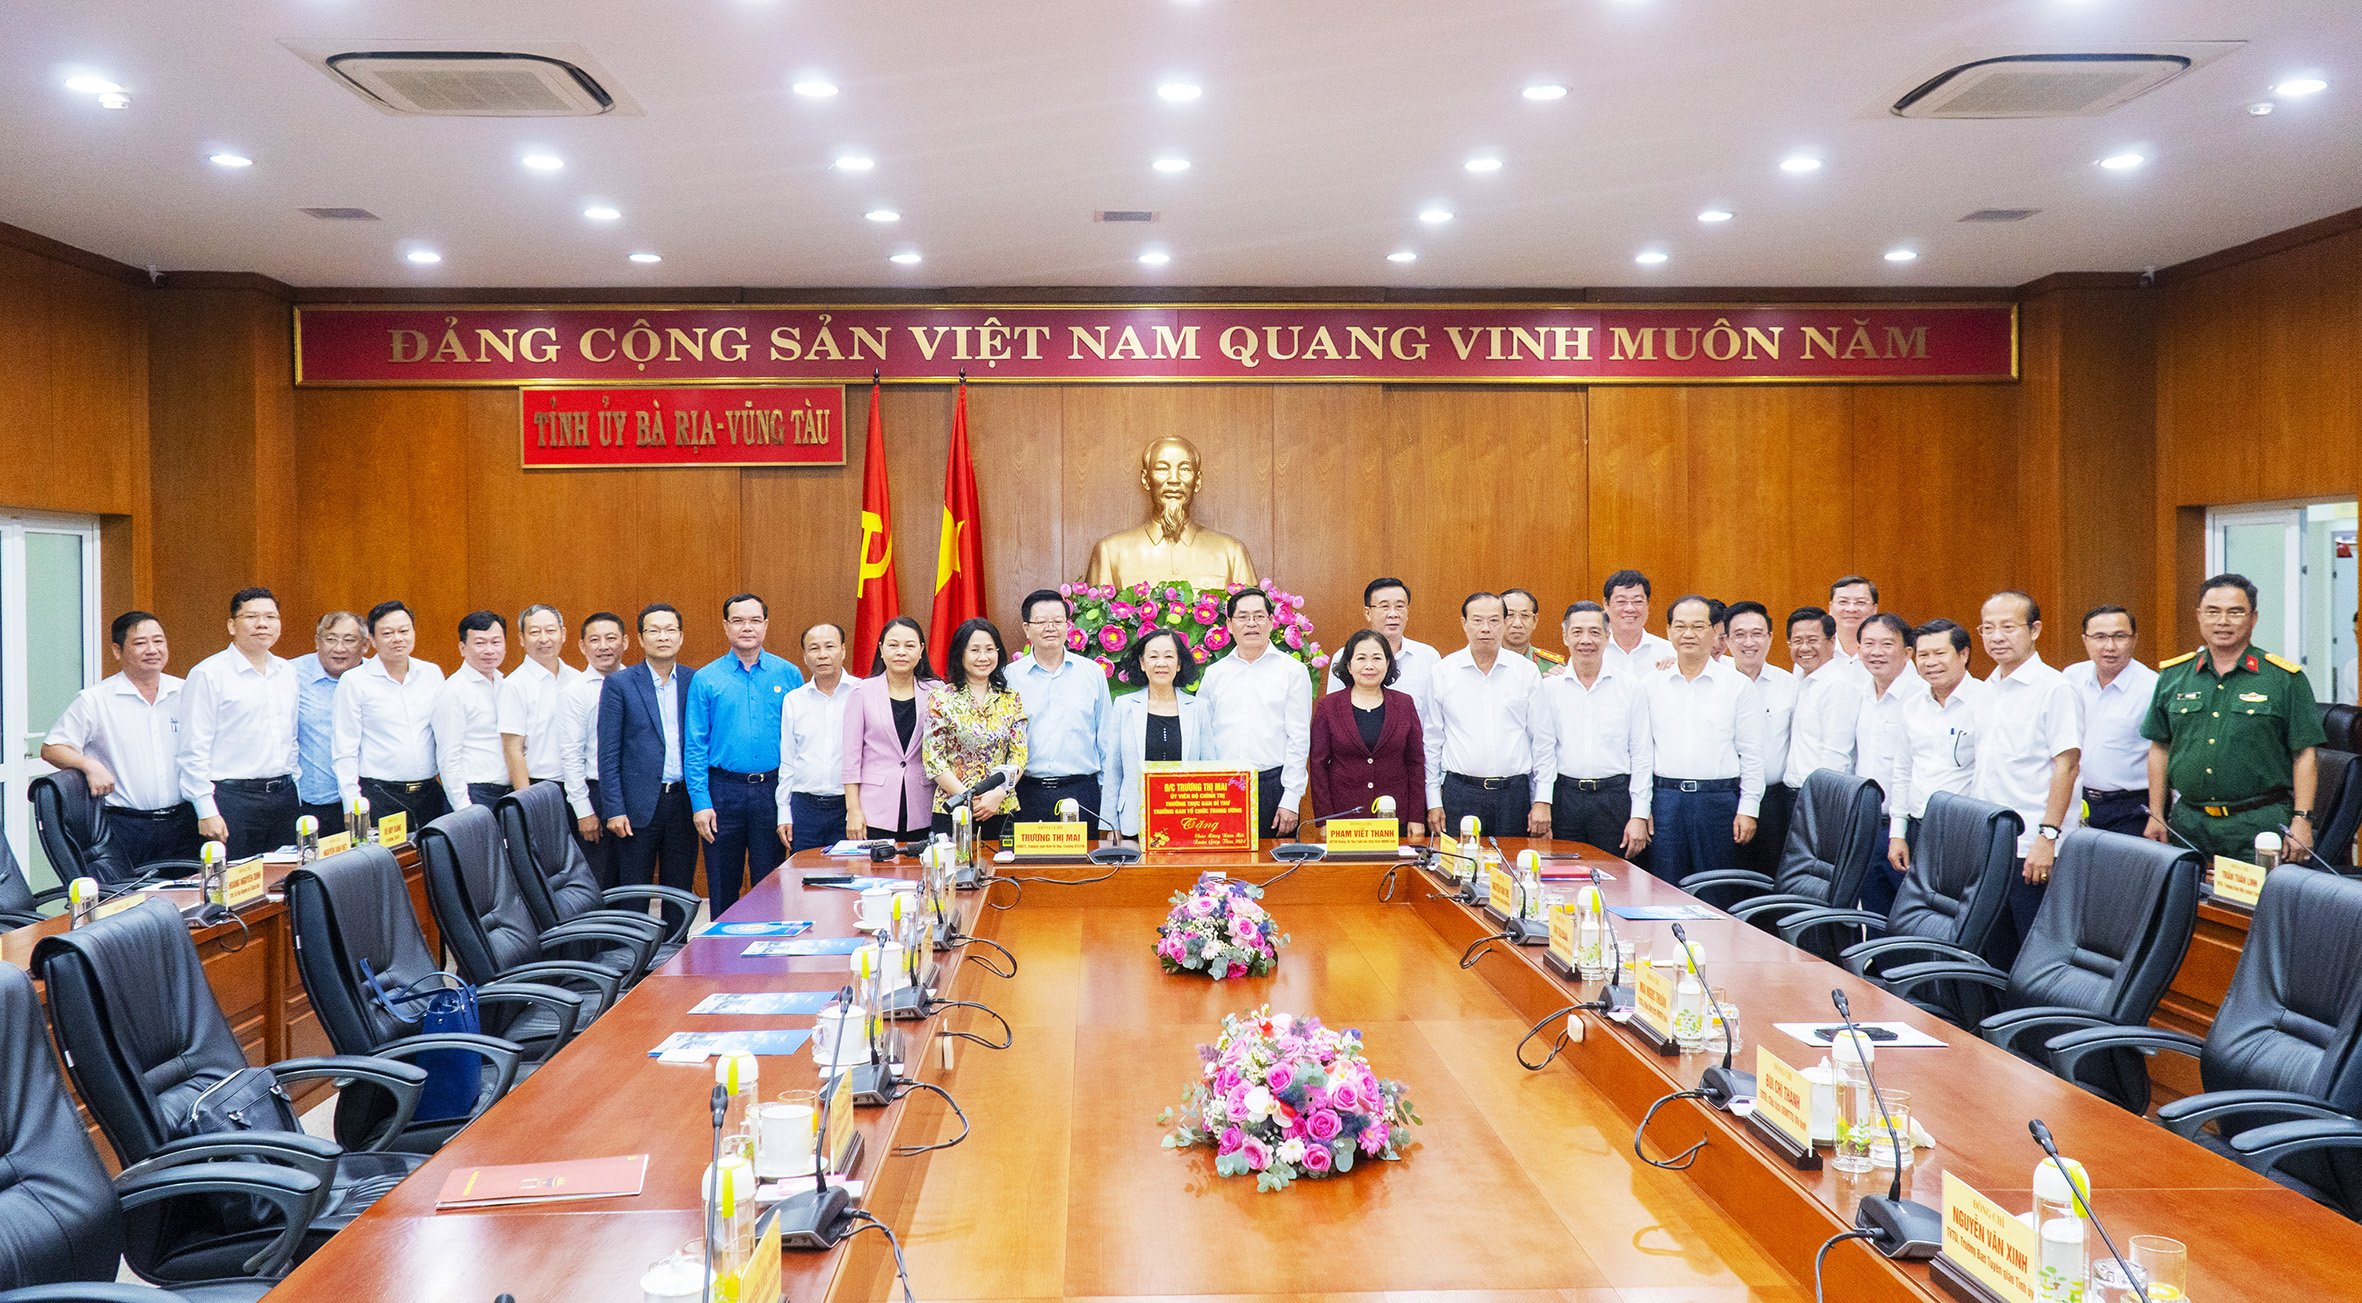 Ủy viên Bộ Chính trị, Thường trực Ban Bí thư, Trưởng Ban Tổ chức Trung ương Trương Thị Mai, tặng quà chúc mừng năm mới Ban Thường vụ Tỉnh ủy Bà Rịa - Vũng Tàu.